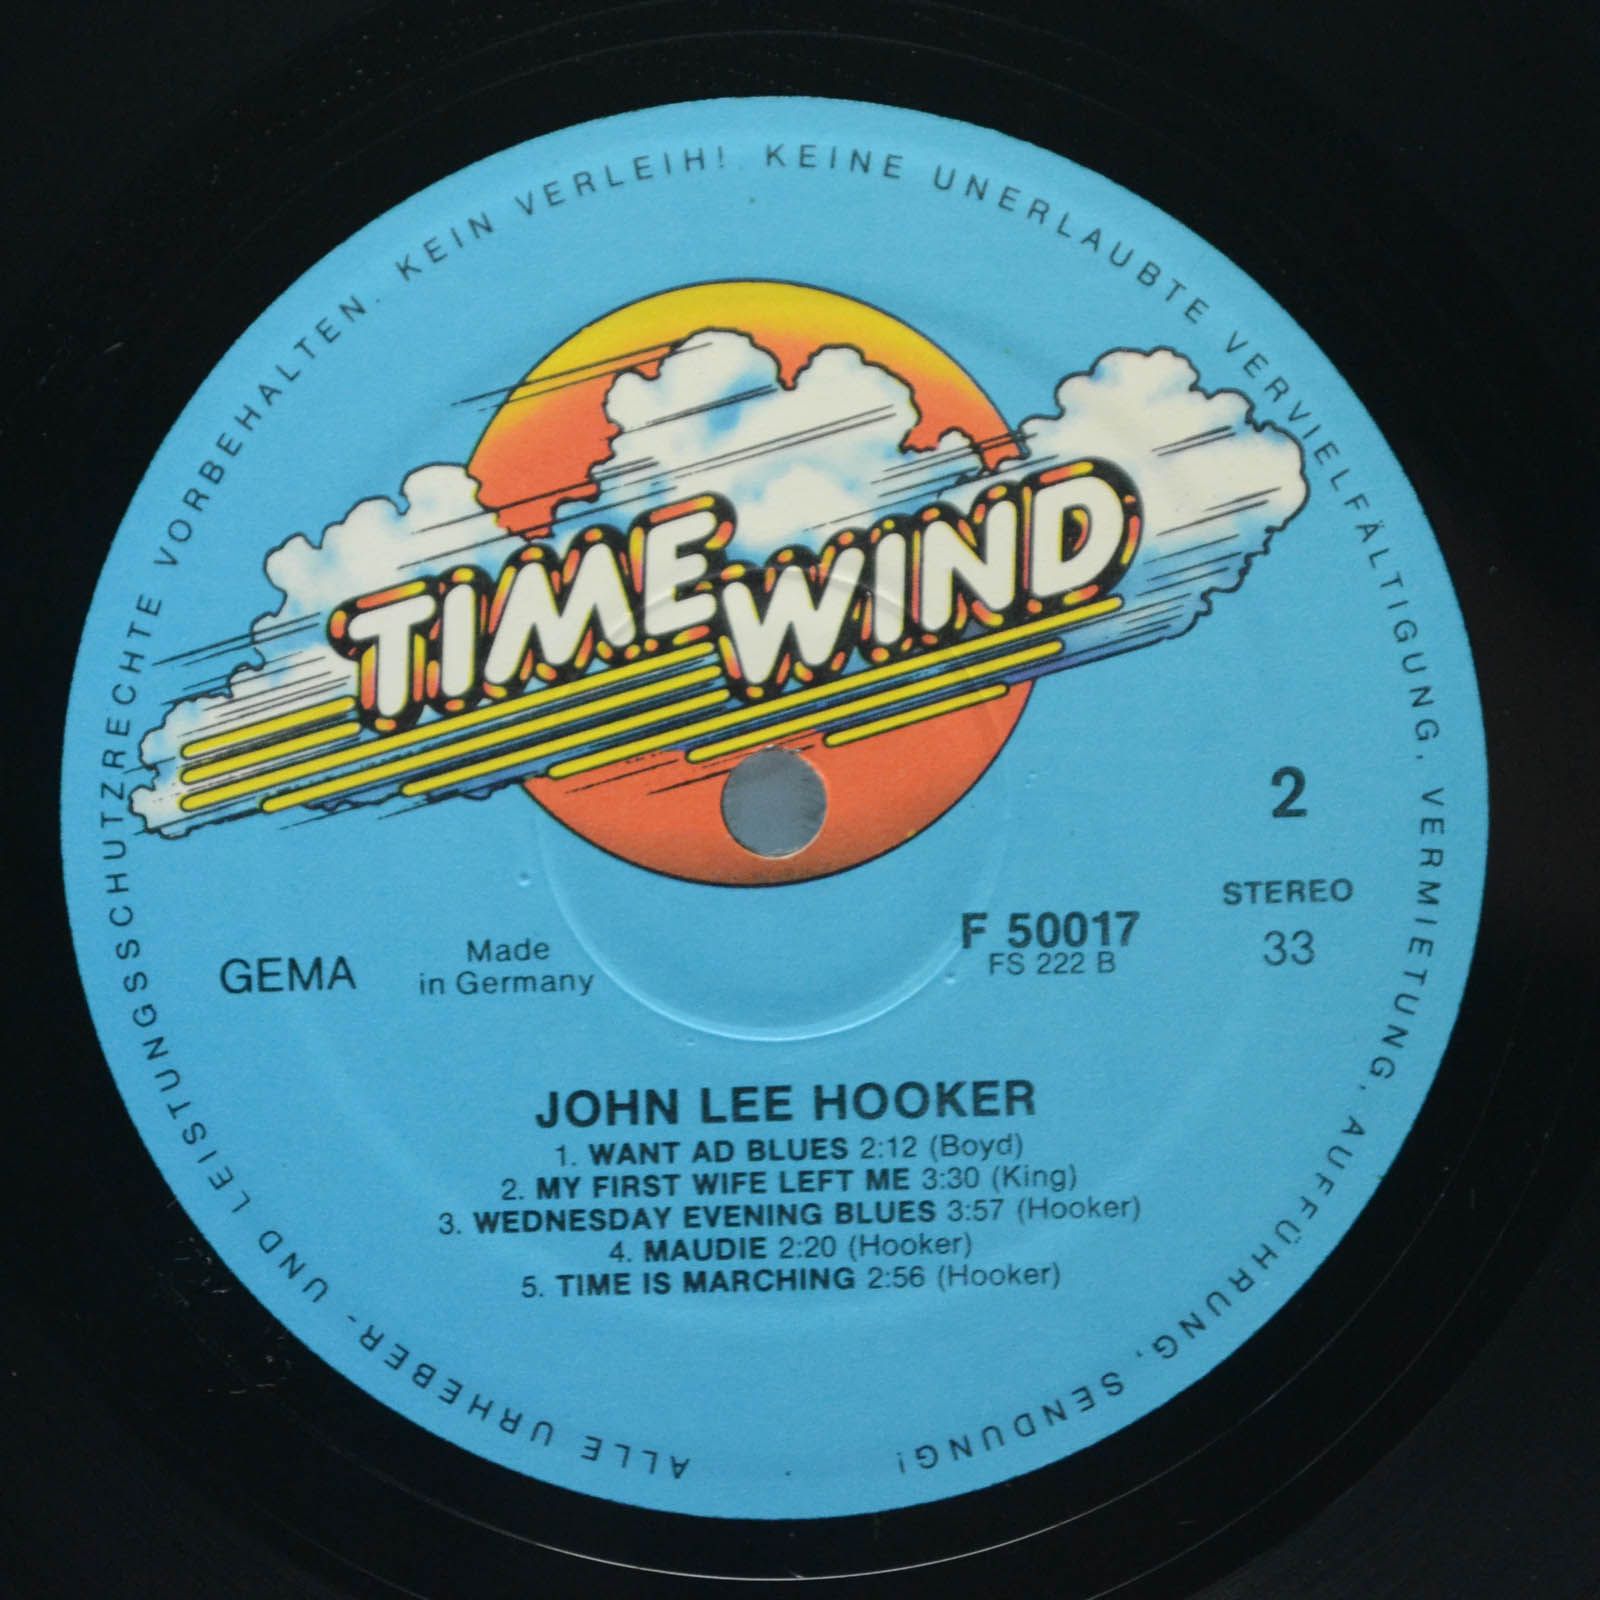 John Lee Hooker — Little Wheel, 1976